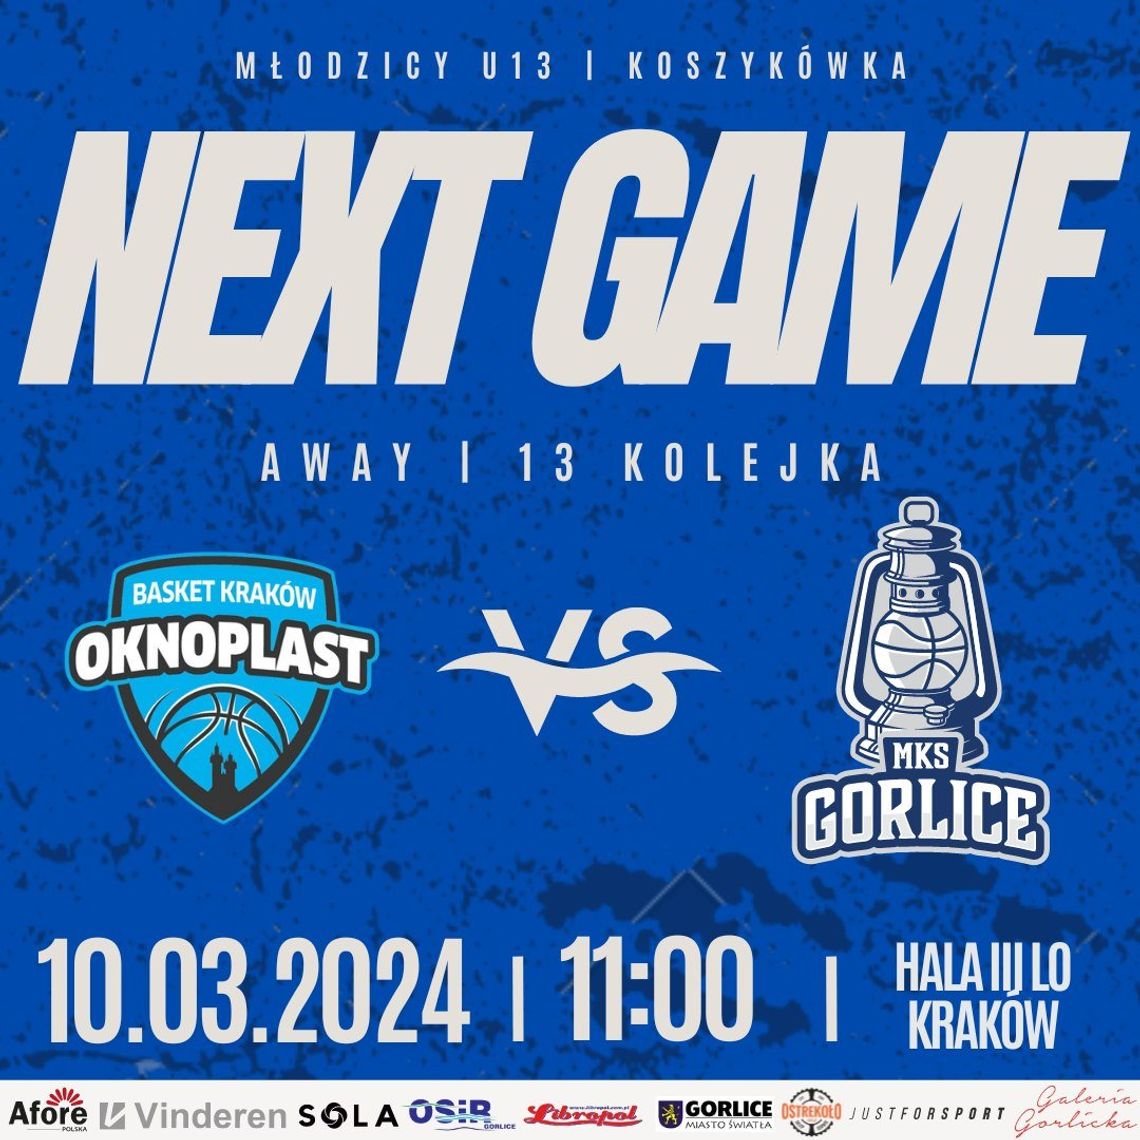 Koszykówka młodzicy U-13: Oknoplast Basket Kraków – MKS Gorlice | halogorlice.info